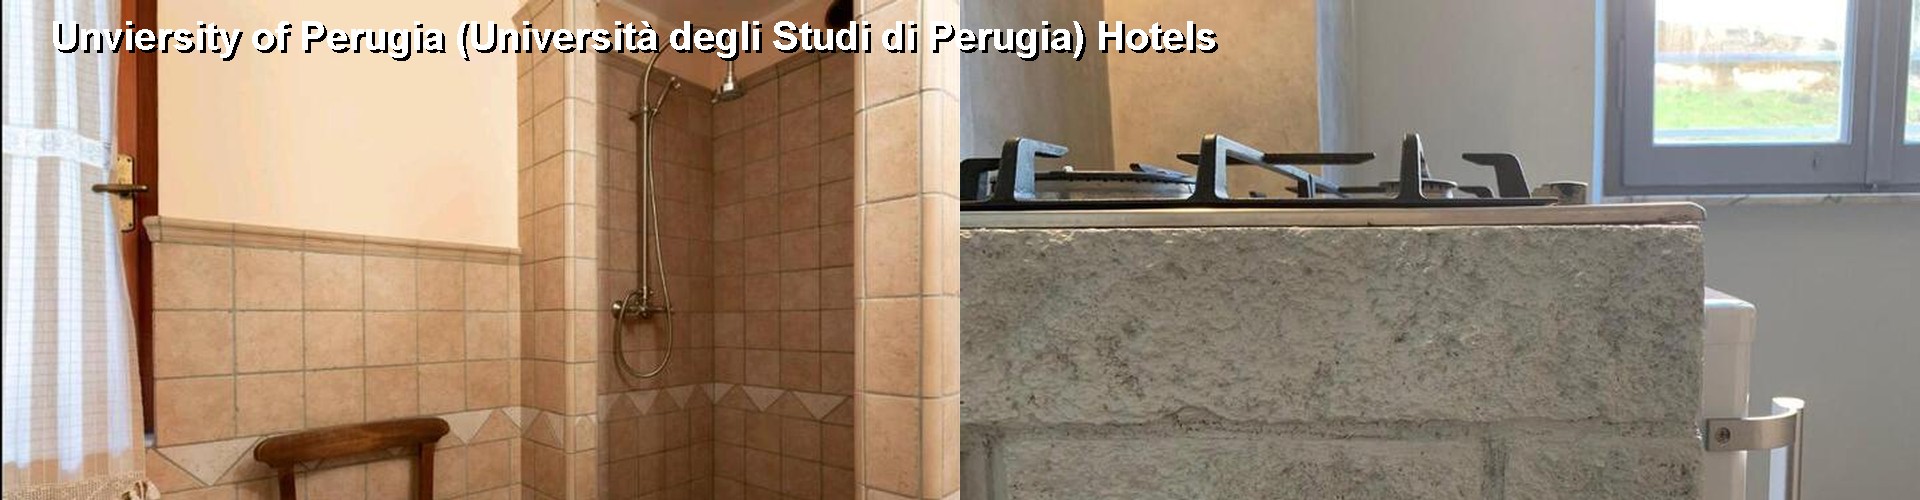 5 Best Hotels near Unviersity of Perugia (Università degli Studi di Perugia)